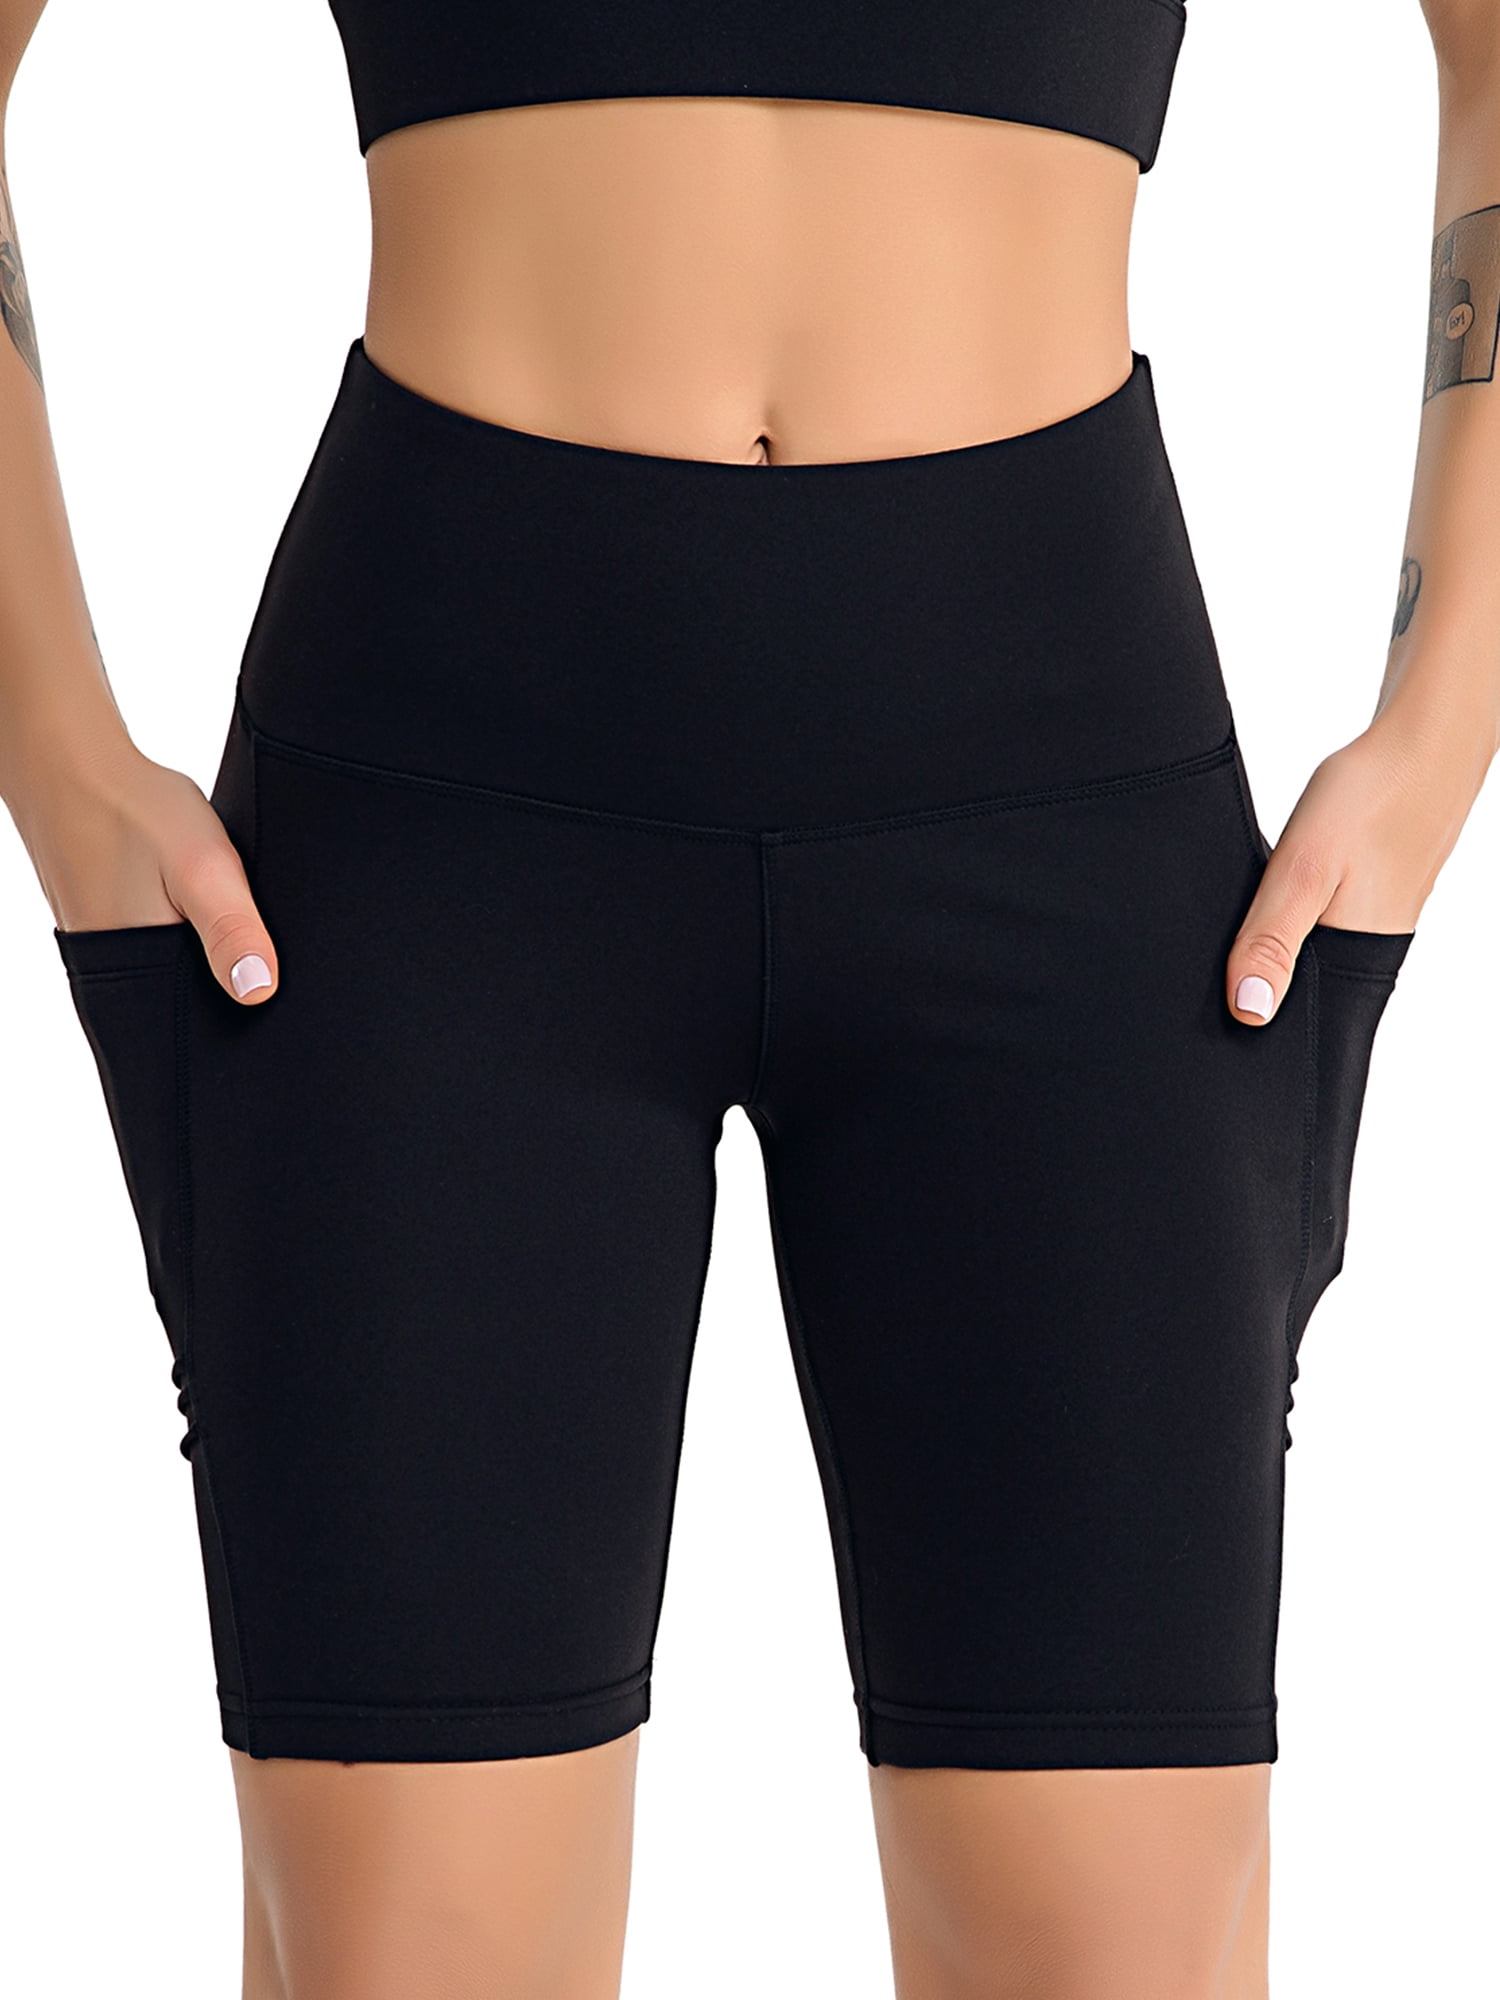 Non See-Through Tummy Control Shorts,Black Womens High Waist Yoga Shorts